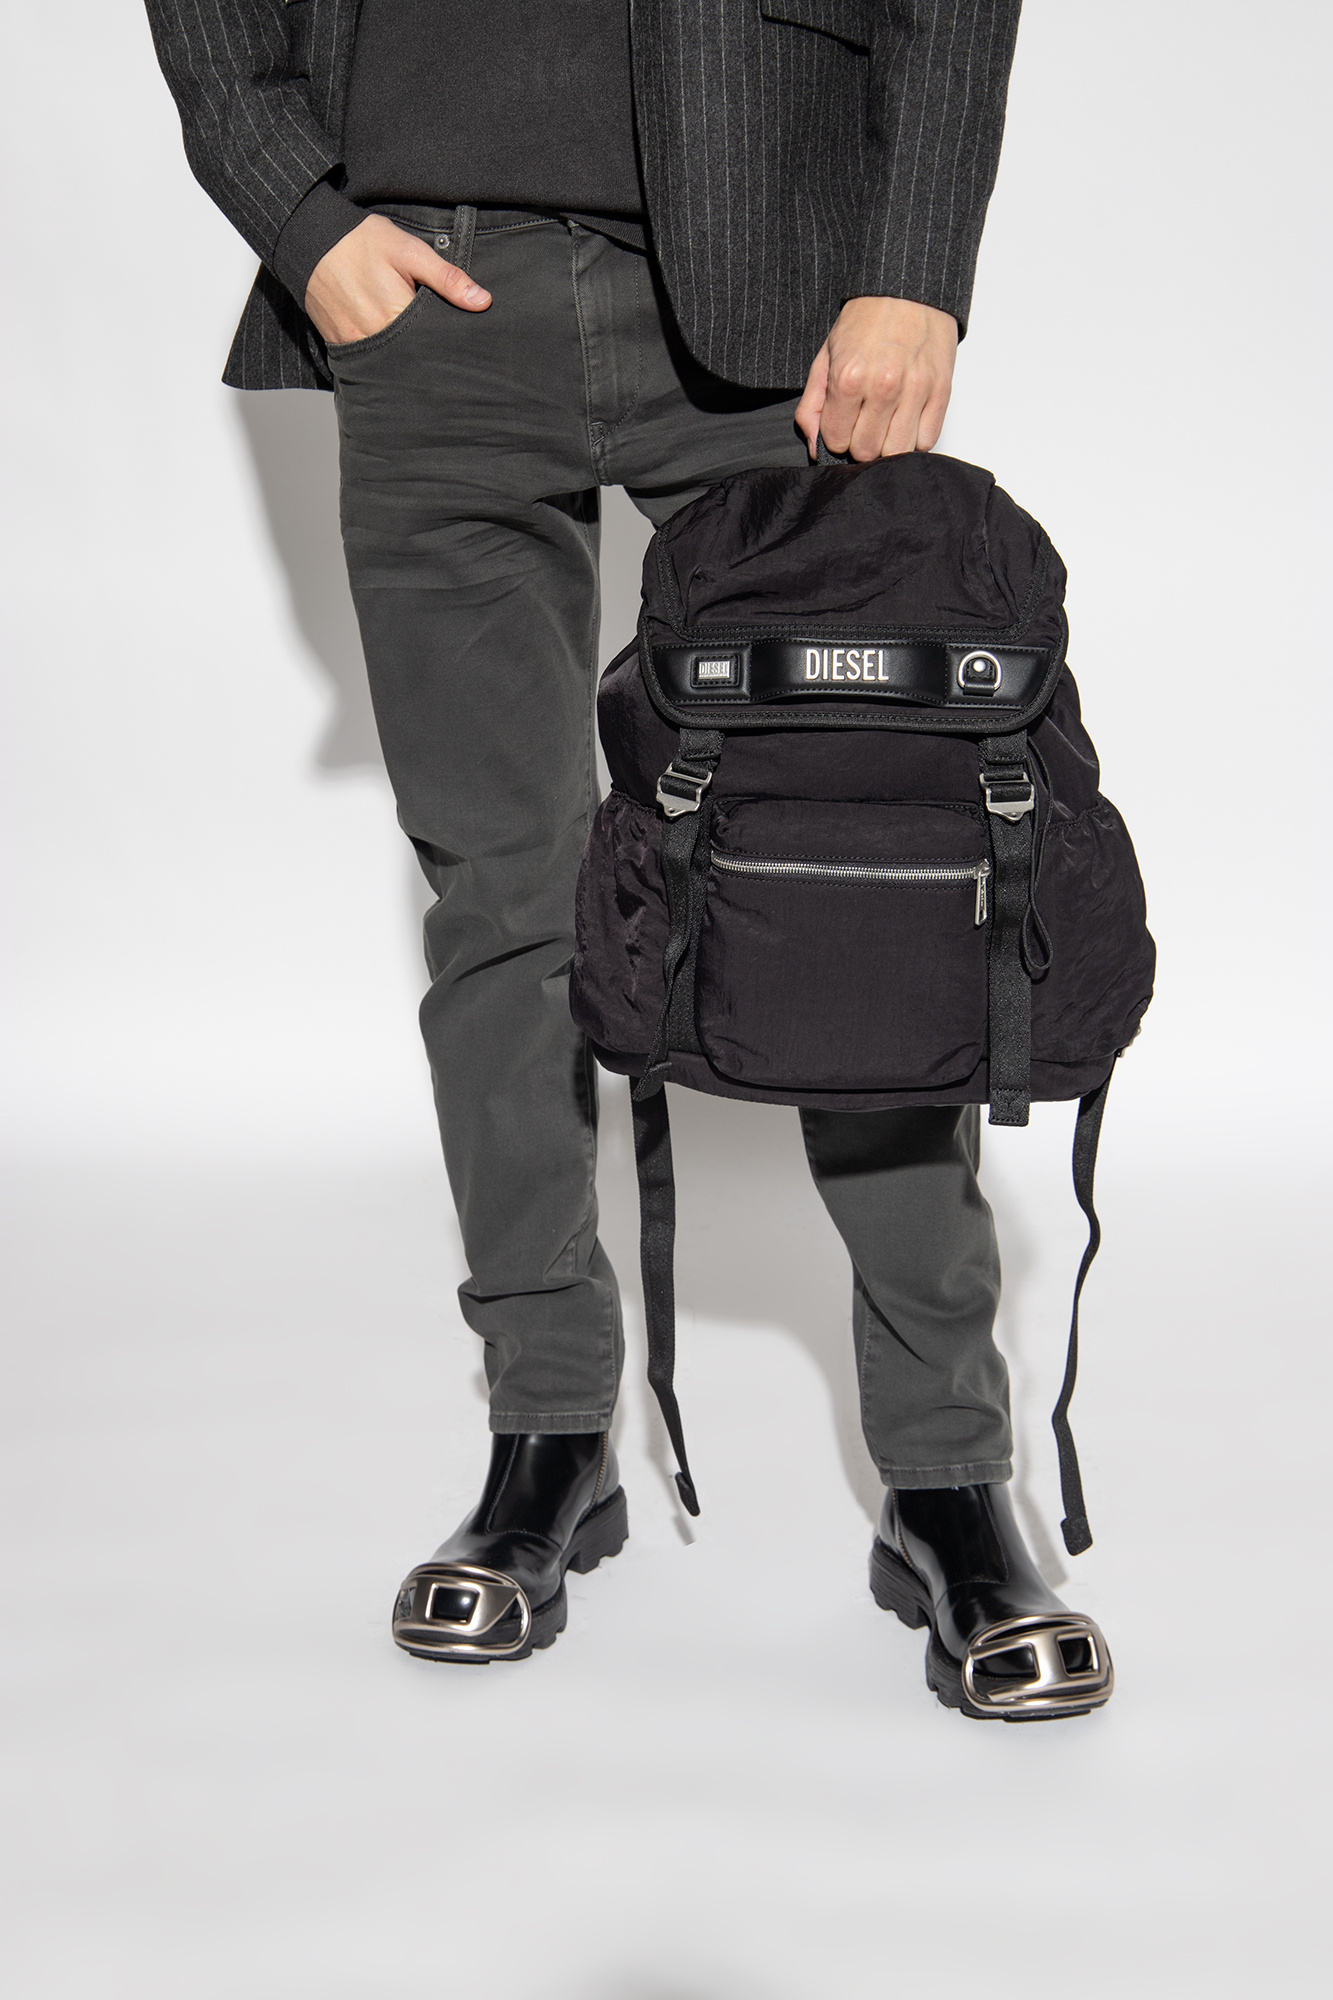 Diesel 'LOGOS' backpack | Men's Bags | Vitkac